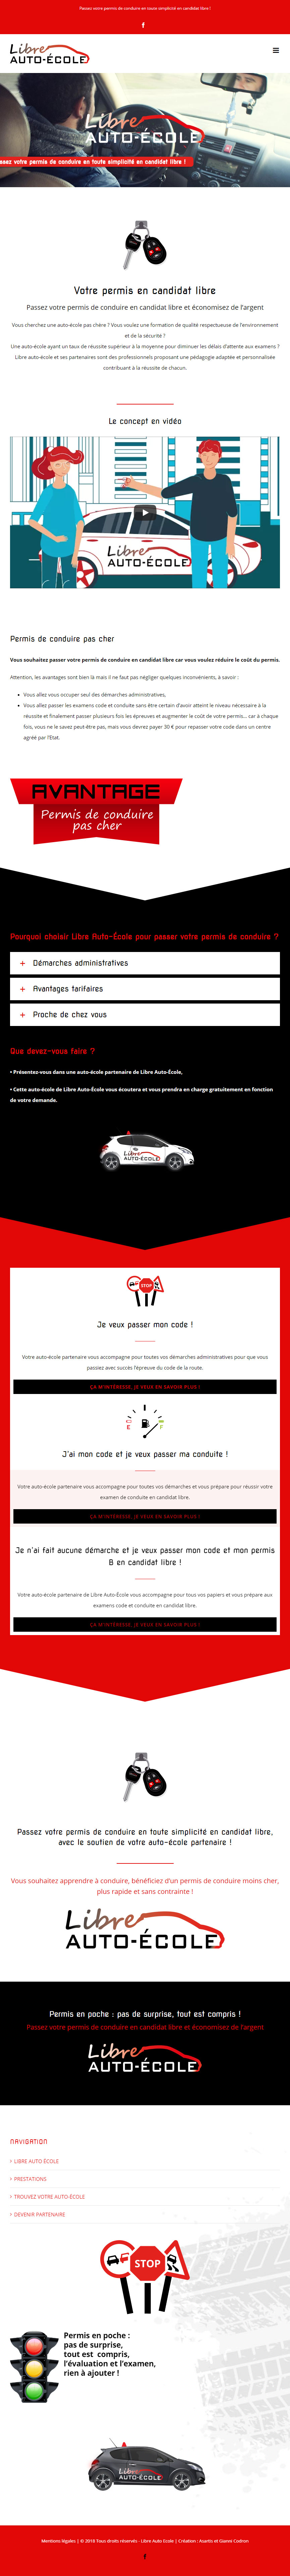 Création site web auto école Angers